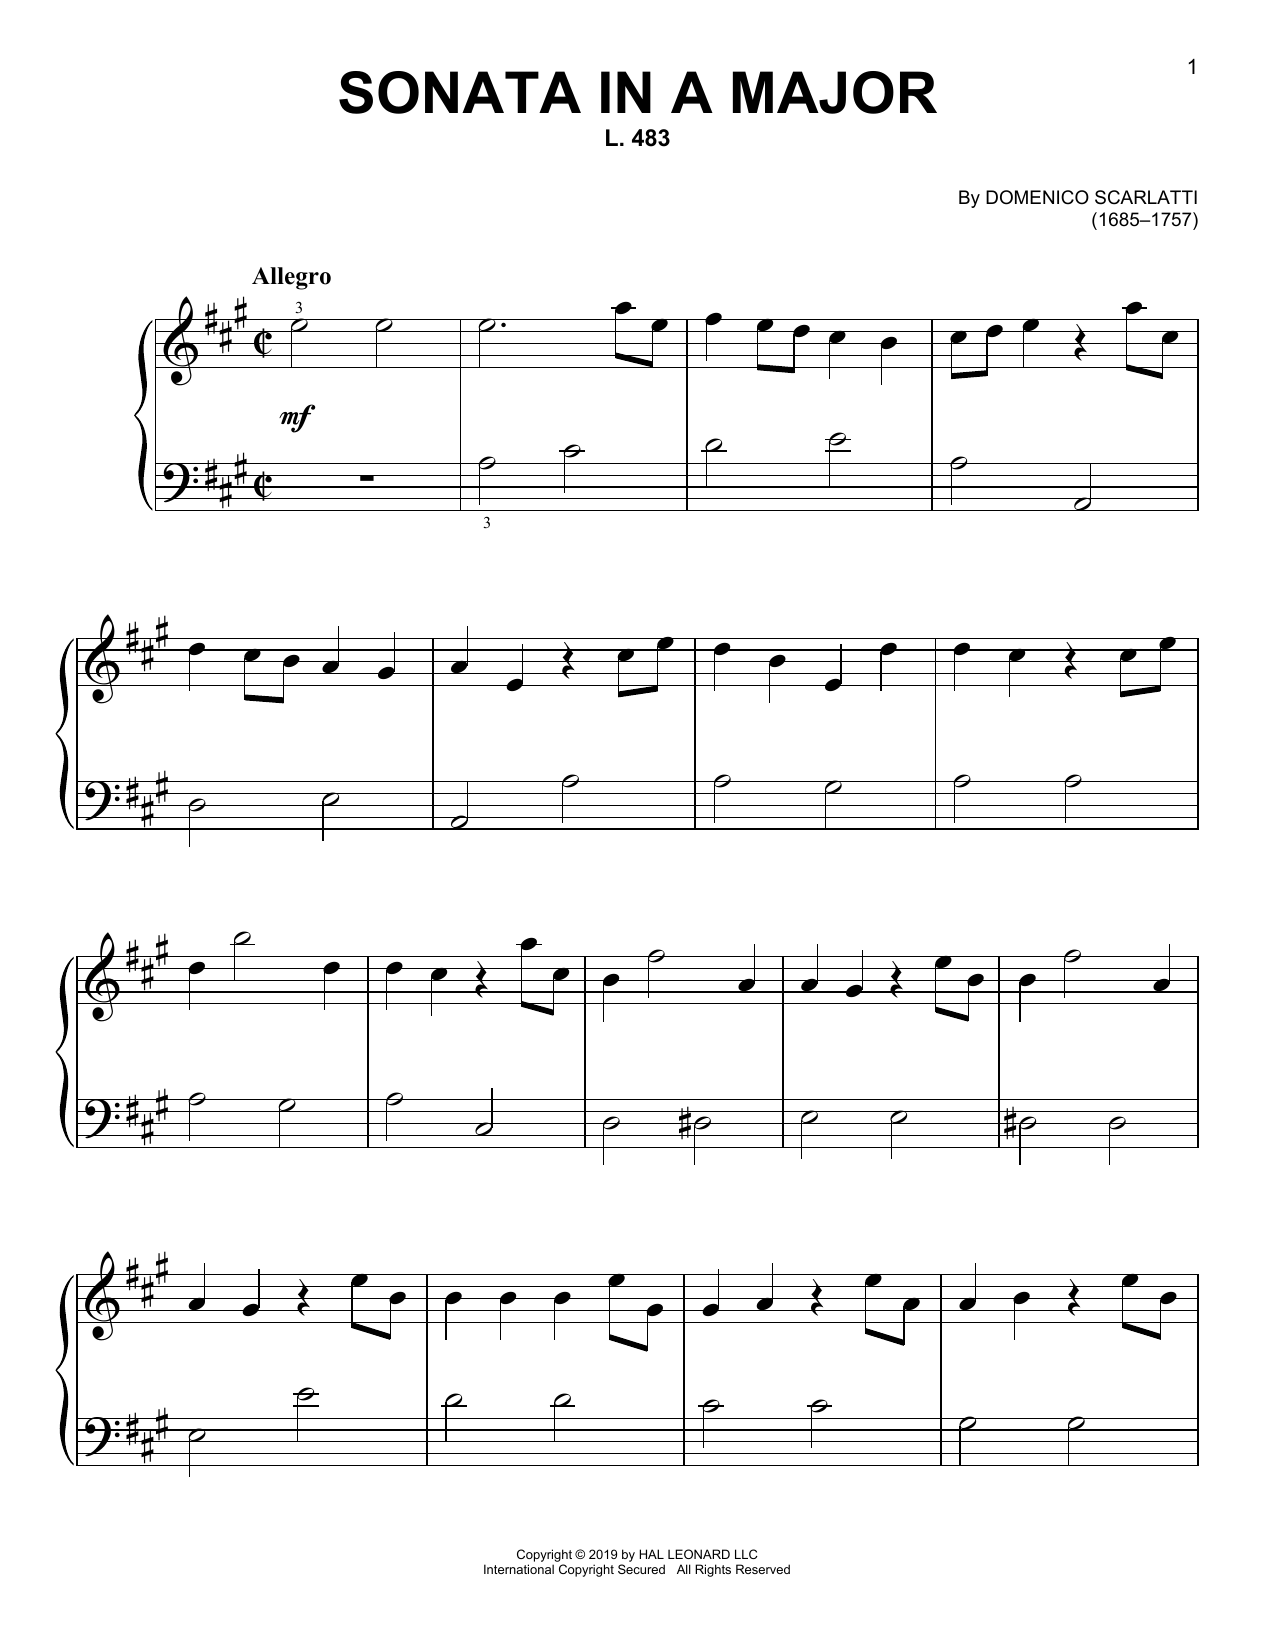 Download Domenico Scarlatti Sonata In A Major, L. 483 Sheet Music and learn how to play Piano Solo PDF digital score in minutes